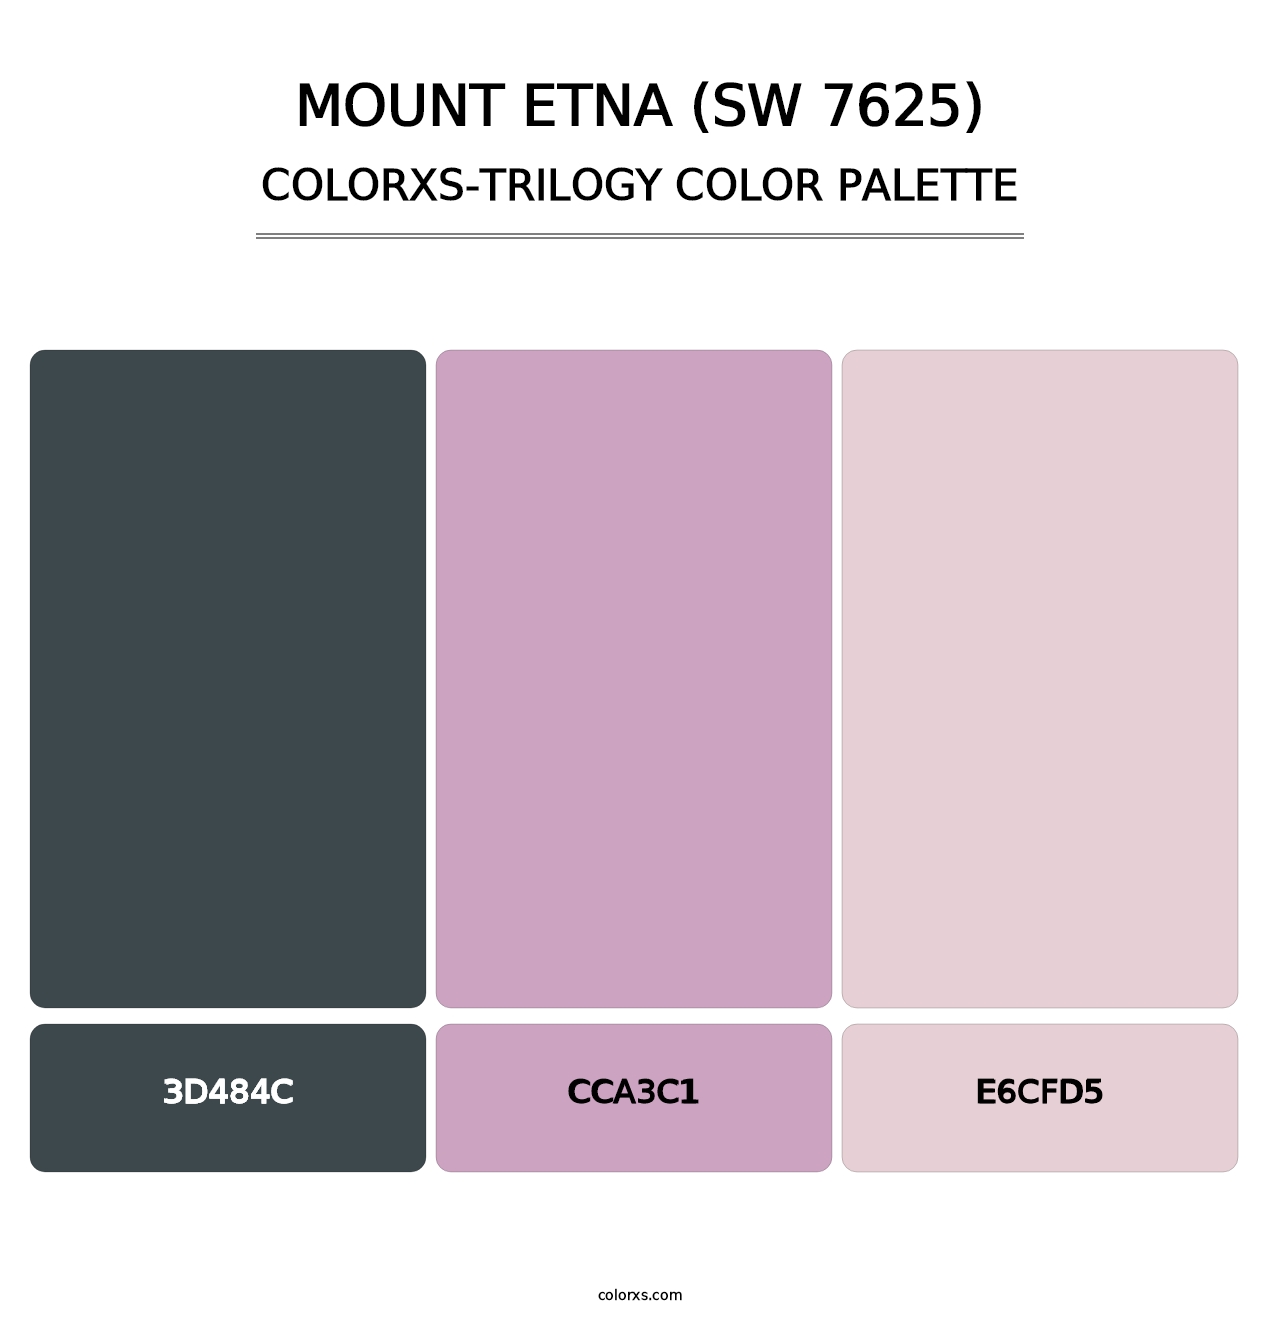 Mount Etna (SW 7625) - Colorxs Trilogy Palette